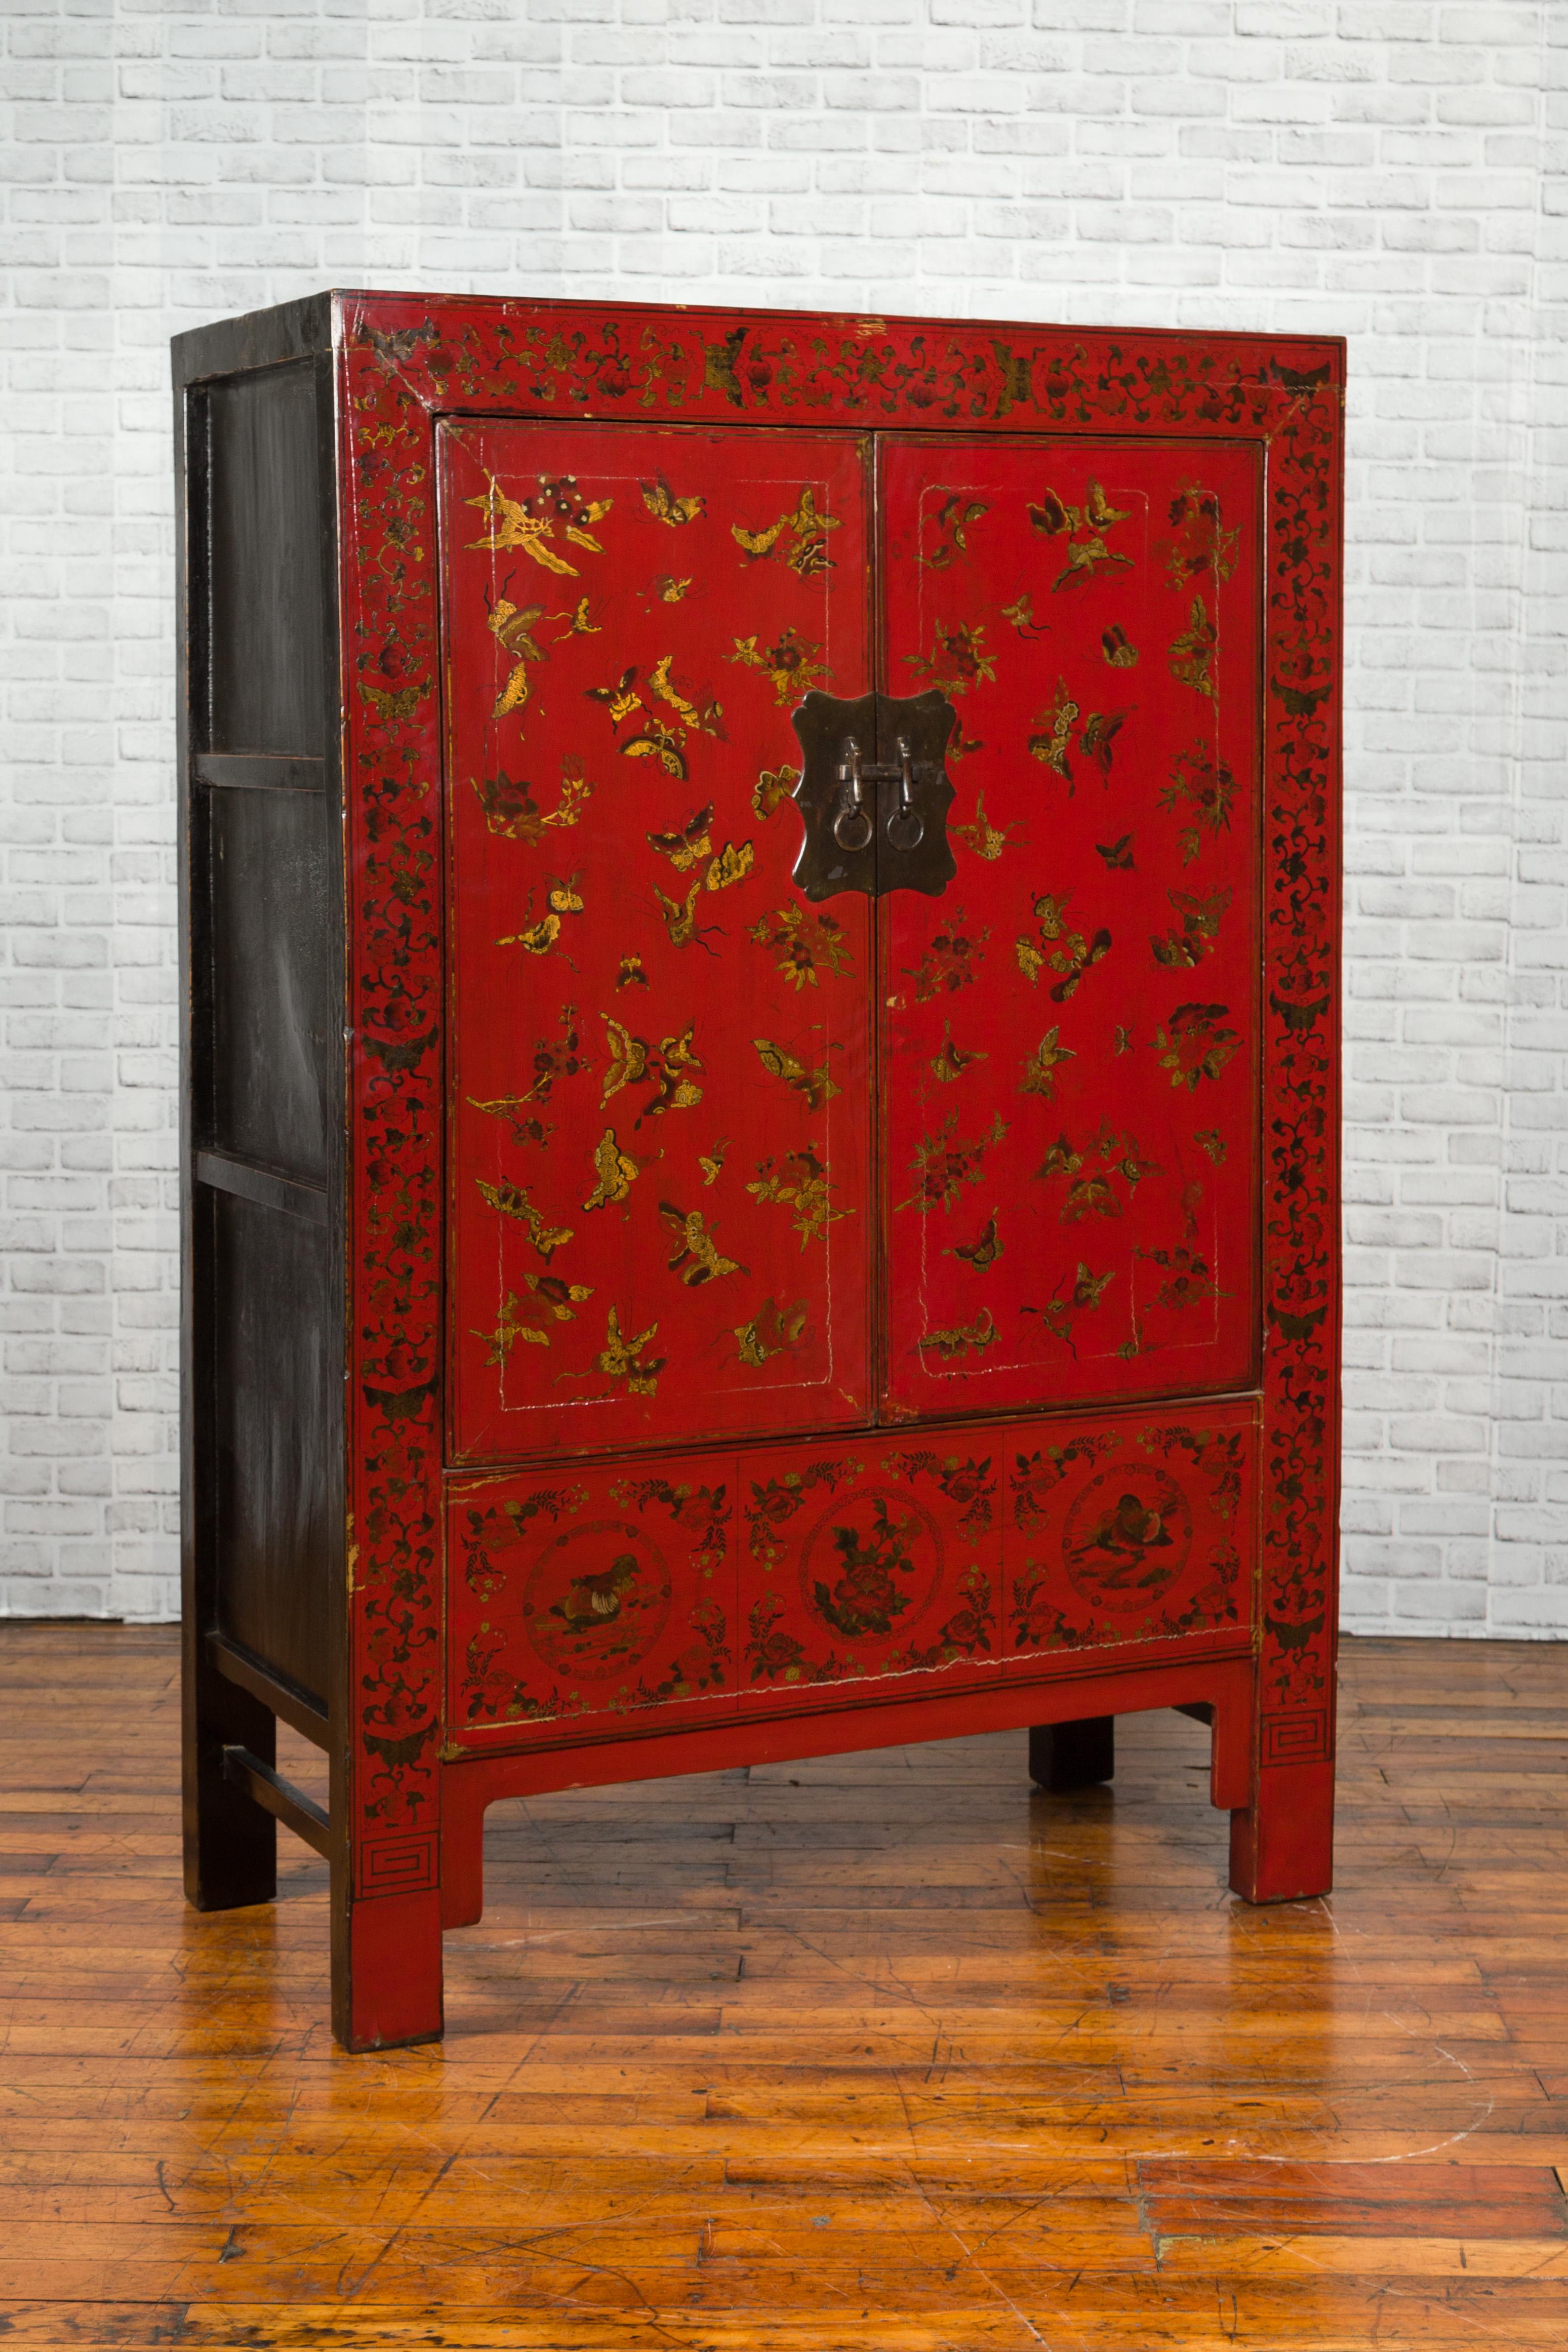 Ein rot lackierter Schrank aus der chinesischen Qing-Dynastie aus dem 19. Jahrhundert mit vergoldeten Chinoiserie-Motiven und verzierten Messingbeschlägen. Dieser Schrank, der während der Qing-Dynastie in China hergestellt wurde, besticht durch